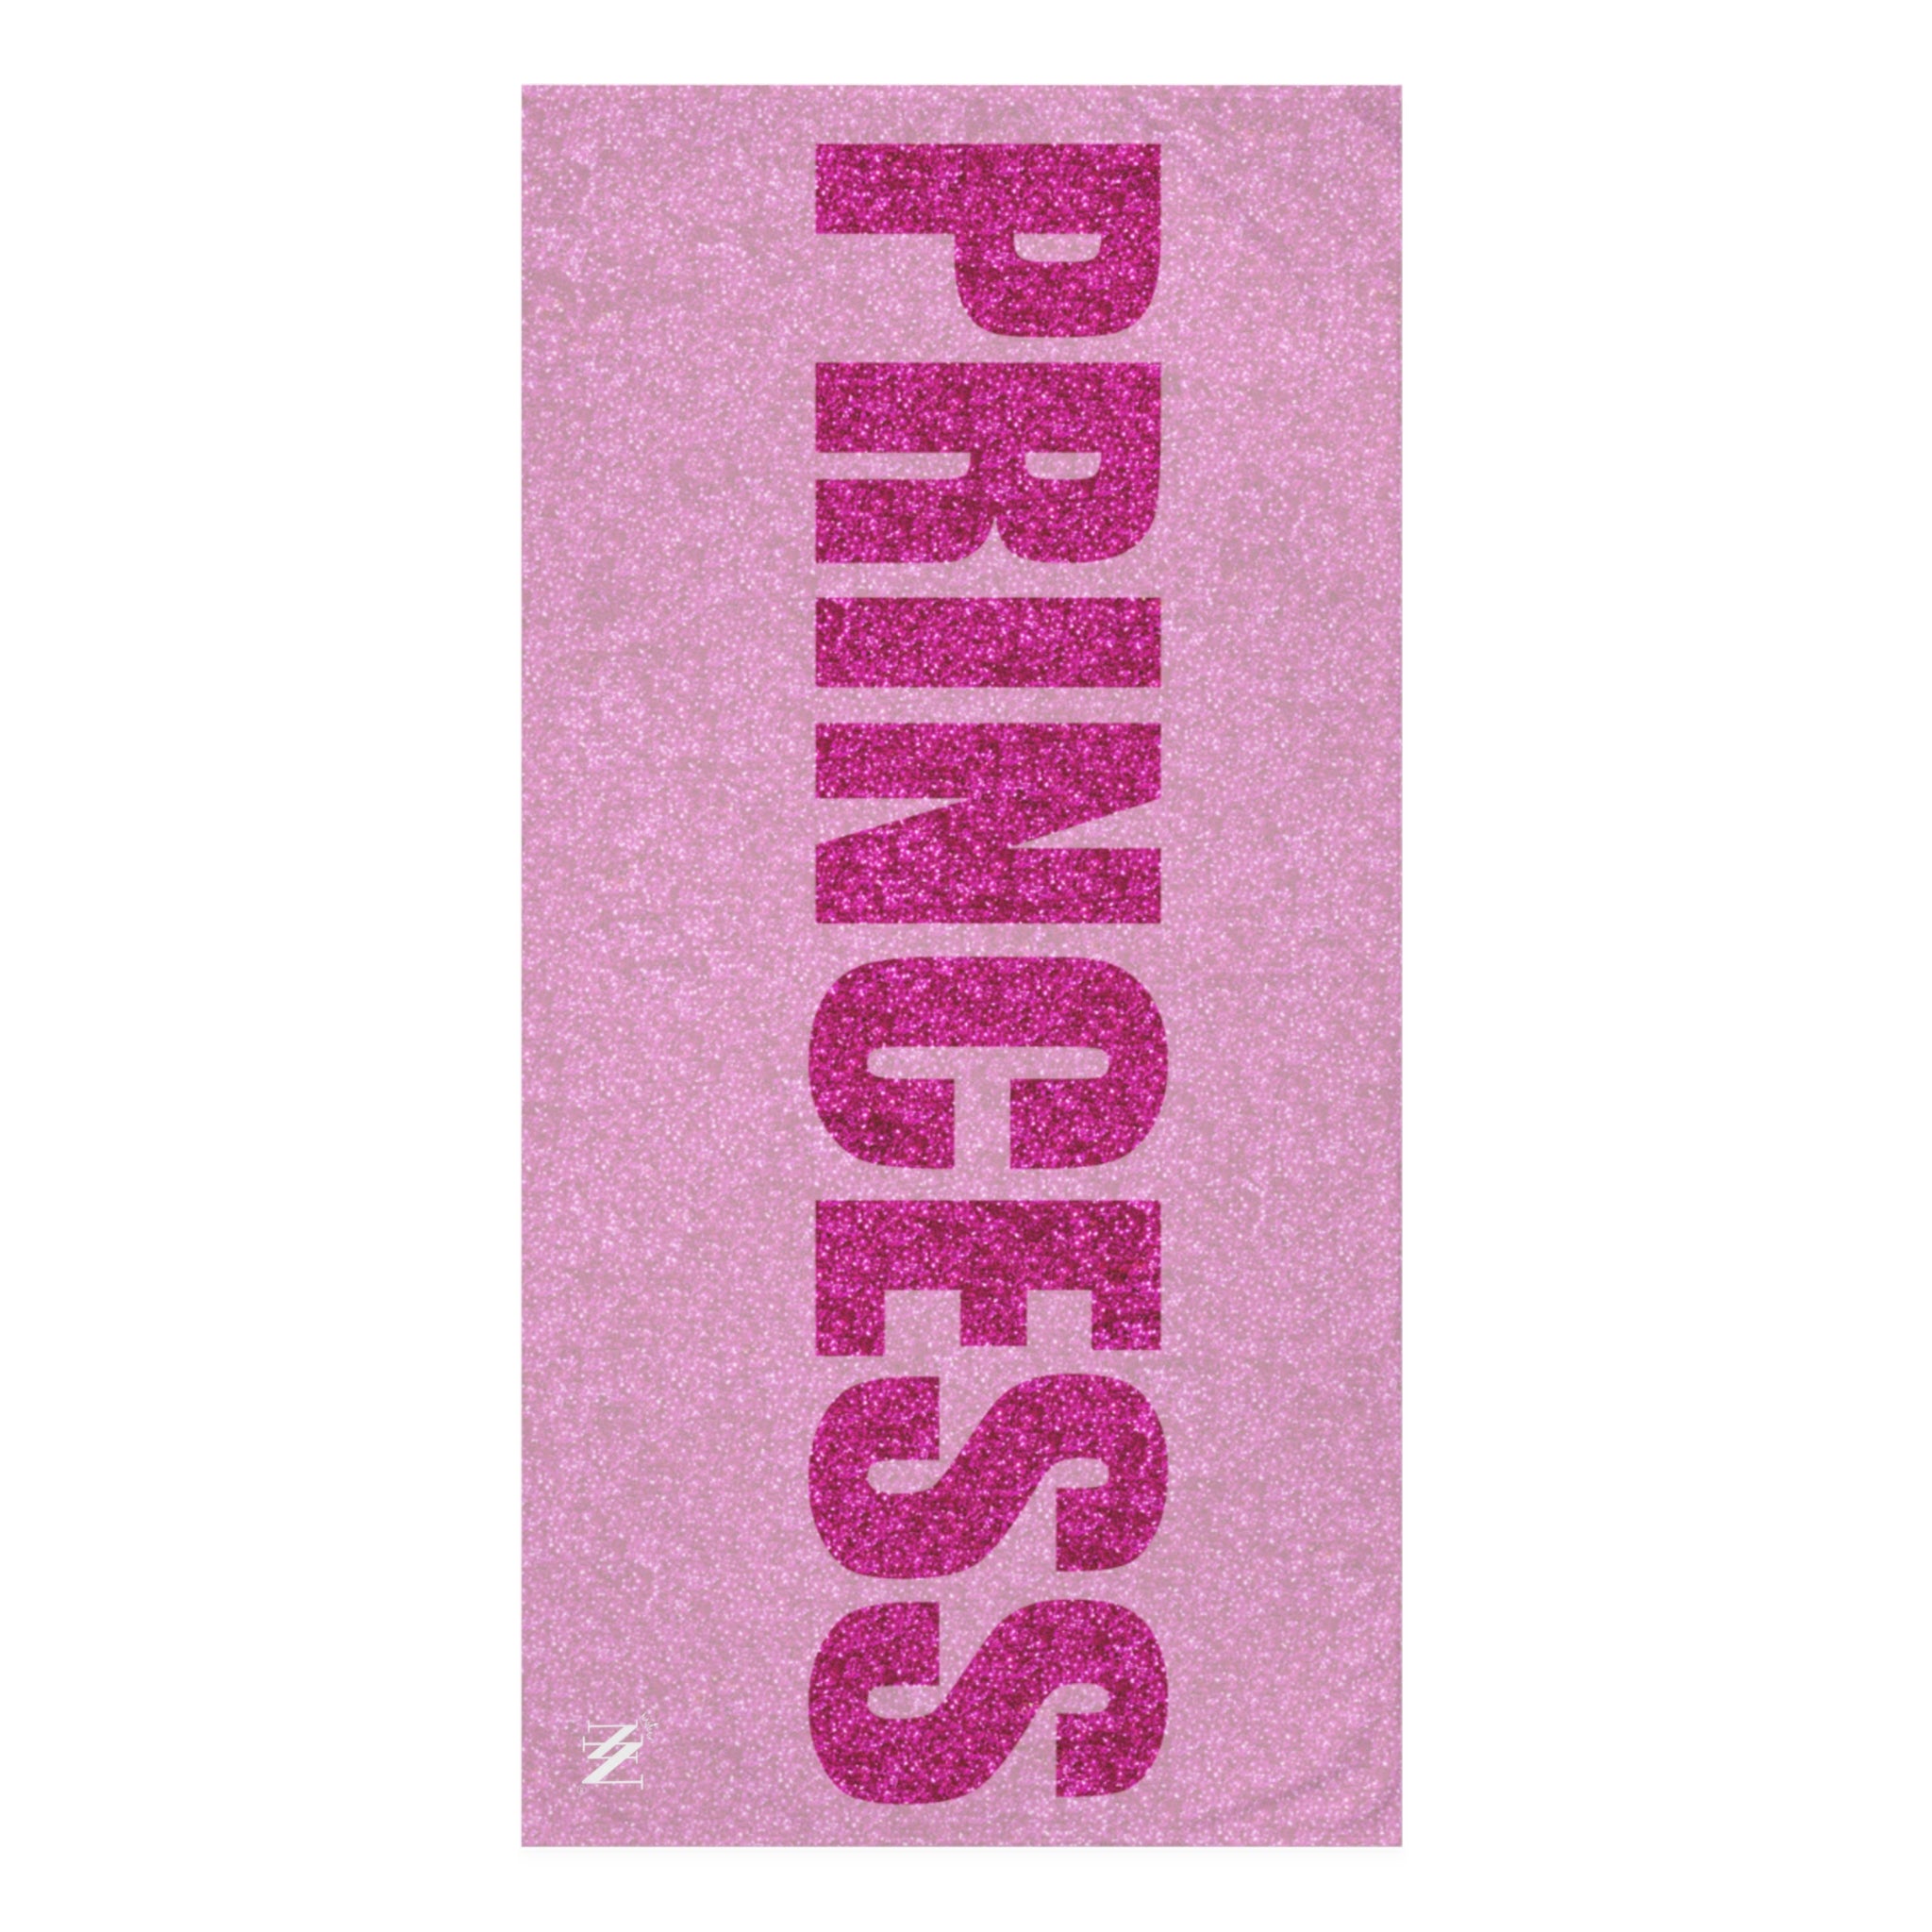 Princess sex towel